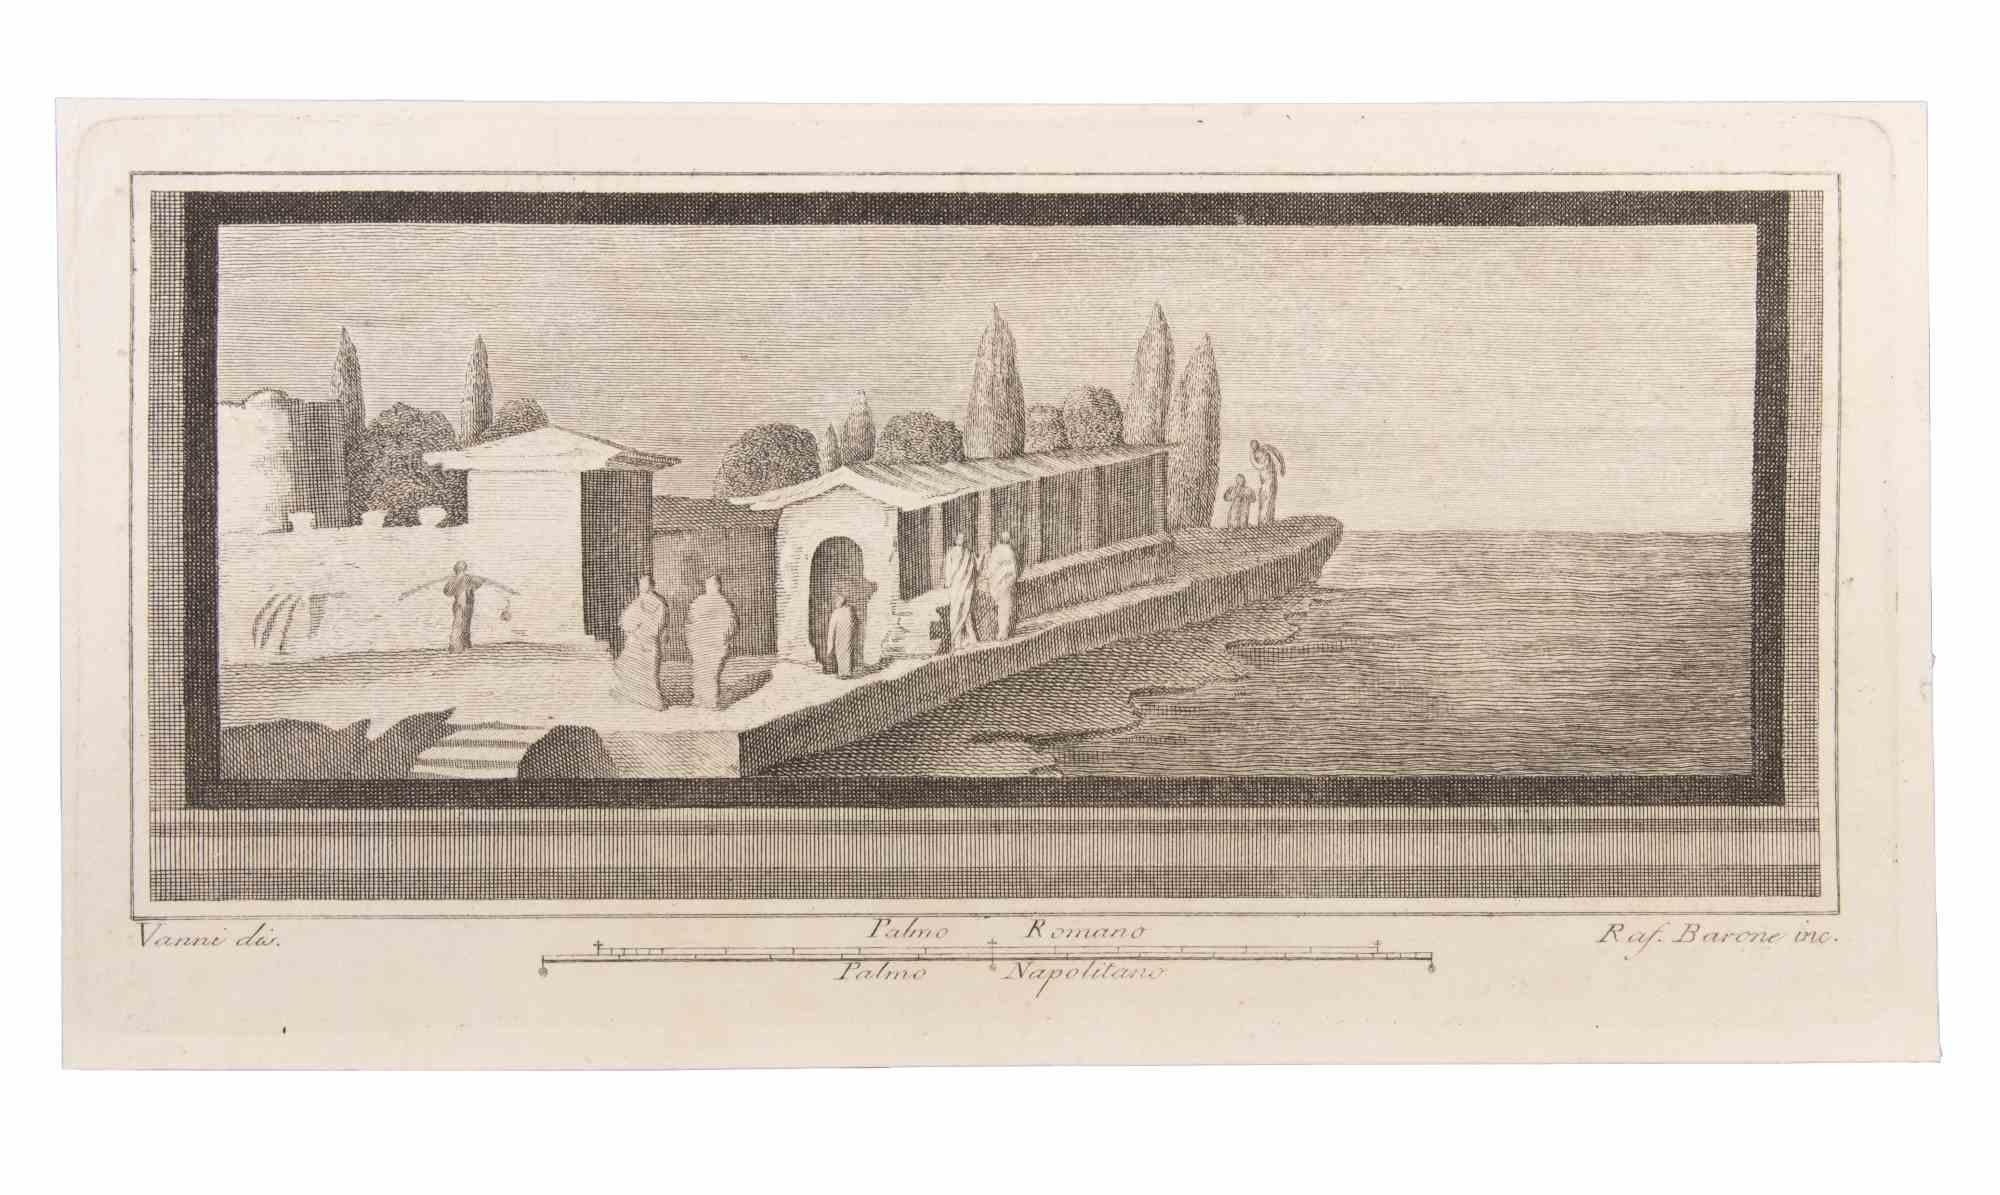 Seelandschaft mit Monument und Figuren ist eine Radierung von Raffaele Barone (18. Jahrhundert).

Die Radierung gehört zu der Druckserie "Antiquities of Herculaneum Exposed" (Originaltitel: "Le Antichità di Ercolano Esposte"), einem achtbändigen